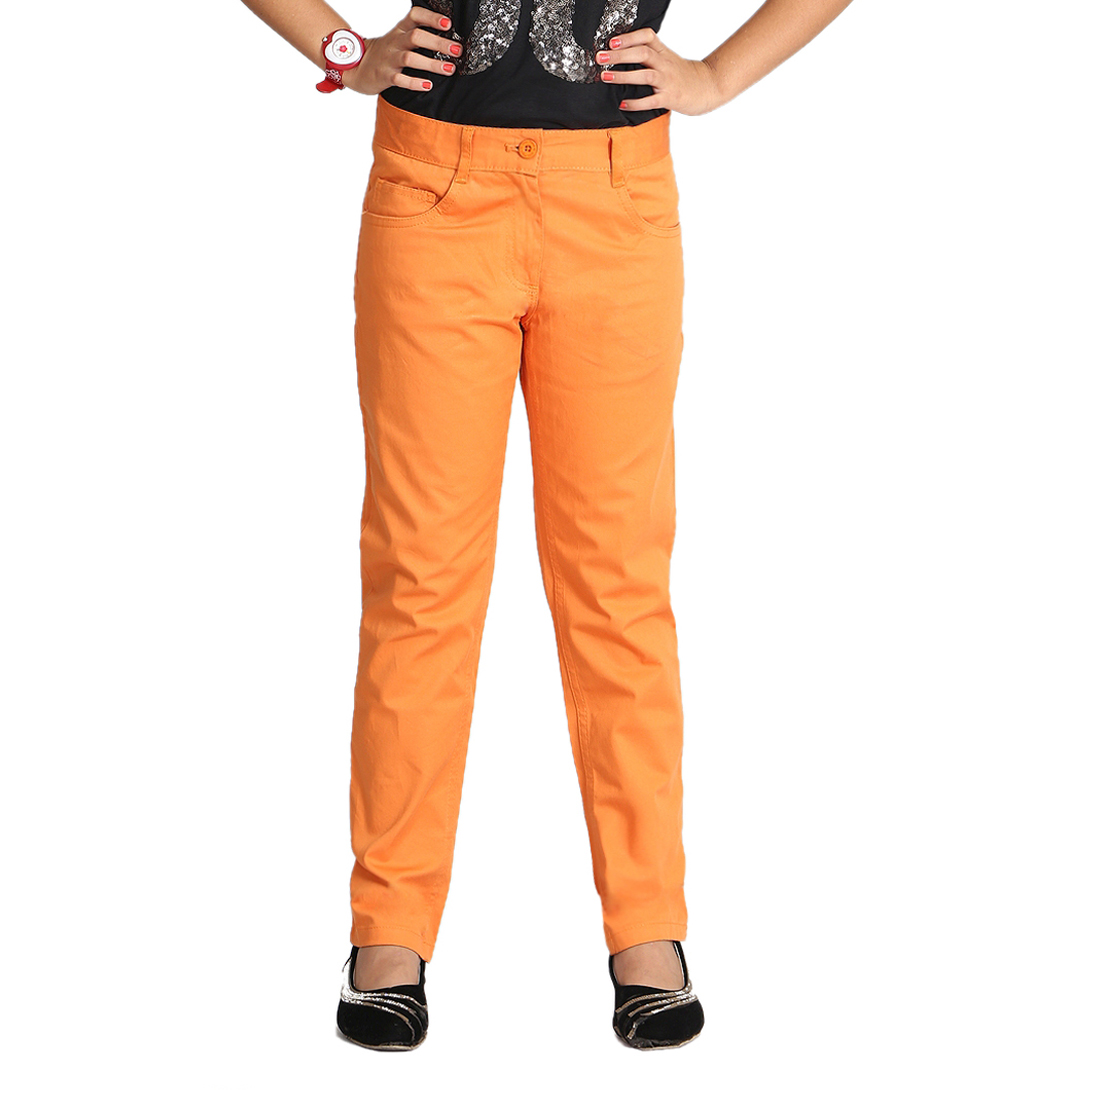 SHEIN Girls Slant Pocket Solid Corduroy Pants | Cotton pants women, Fashion  pants, Trousers for girls